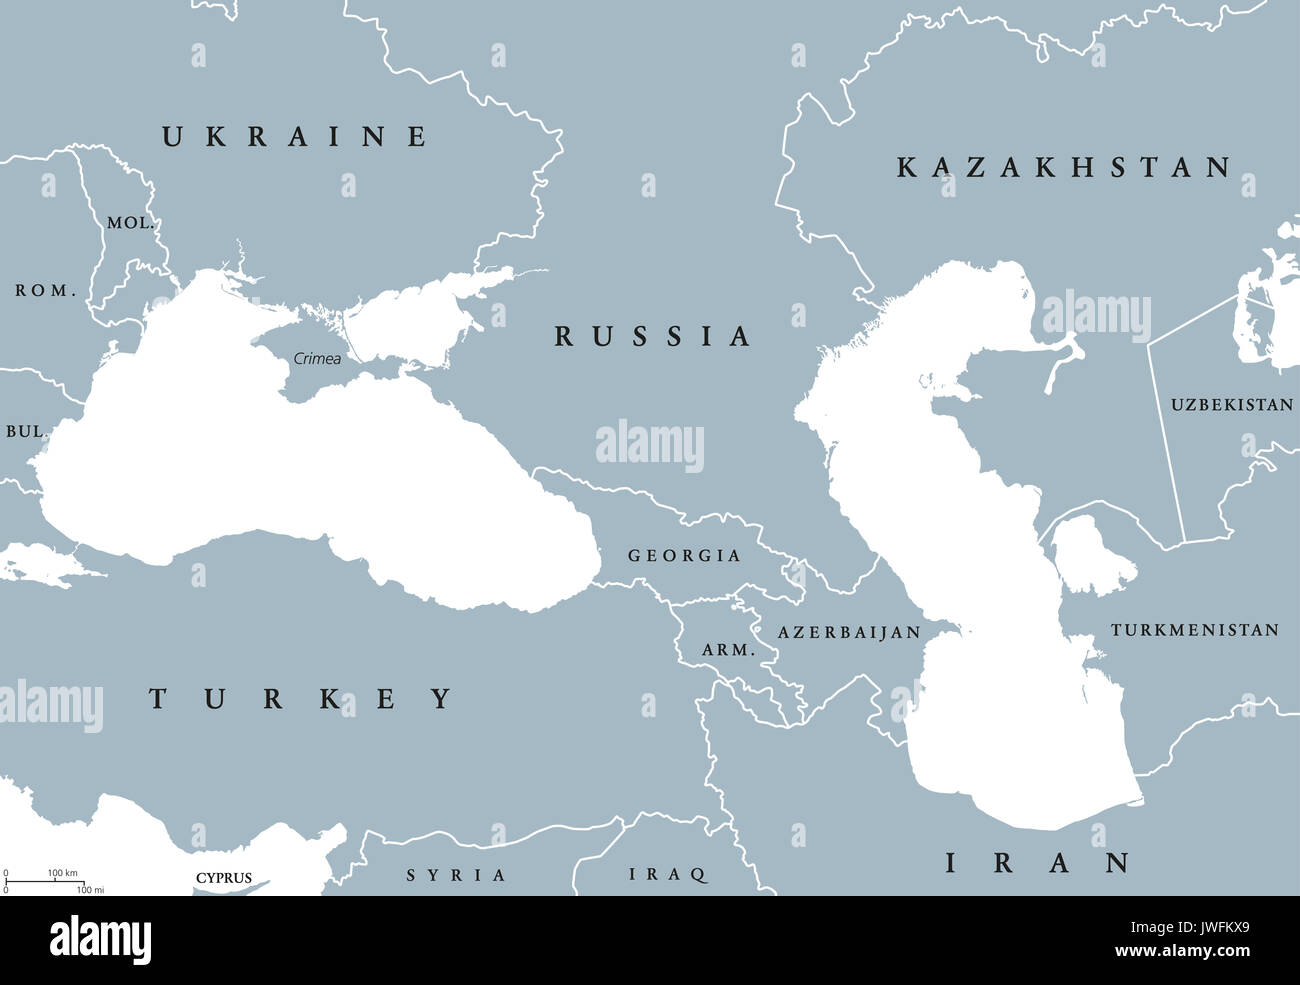 El Mar Negro y el Mar Caspio región mapa político con los países, fronteras y rótulos en Inglés. Cuerpos de agua entre los países de Europa oriental y Asia occidental. Foto de stock